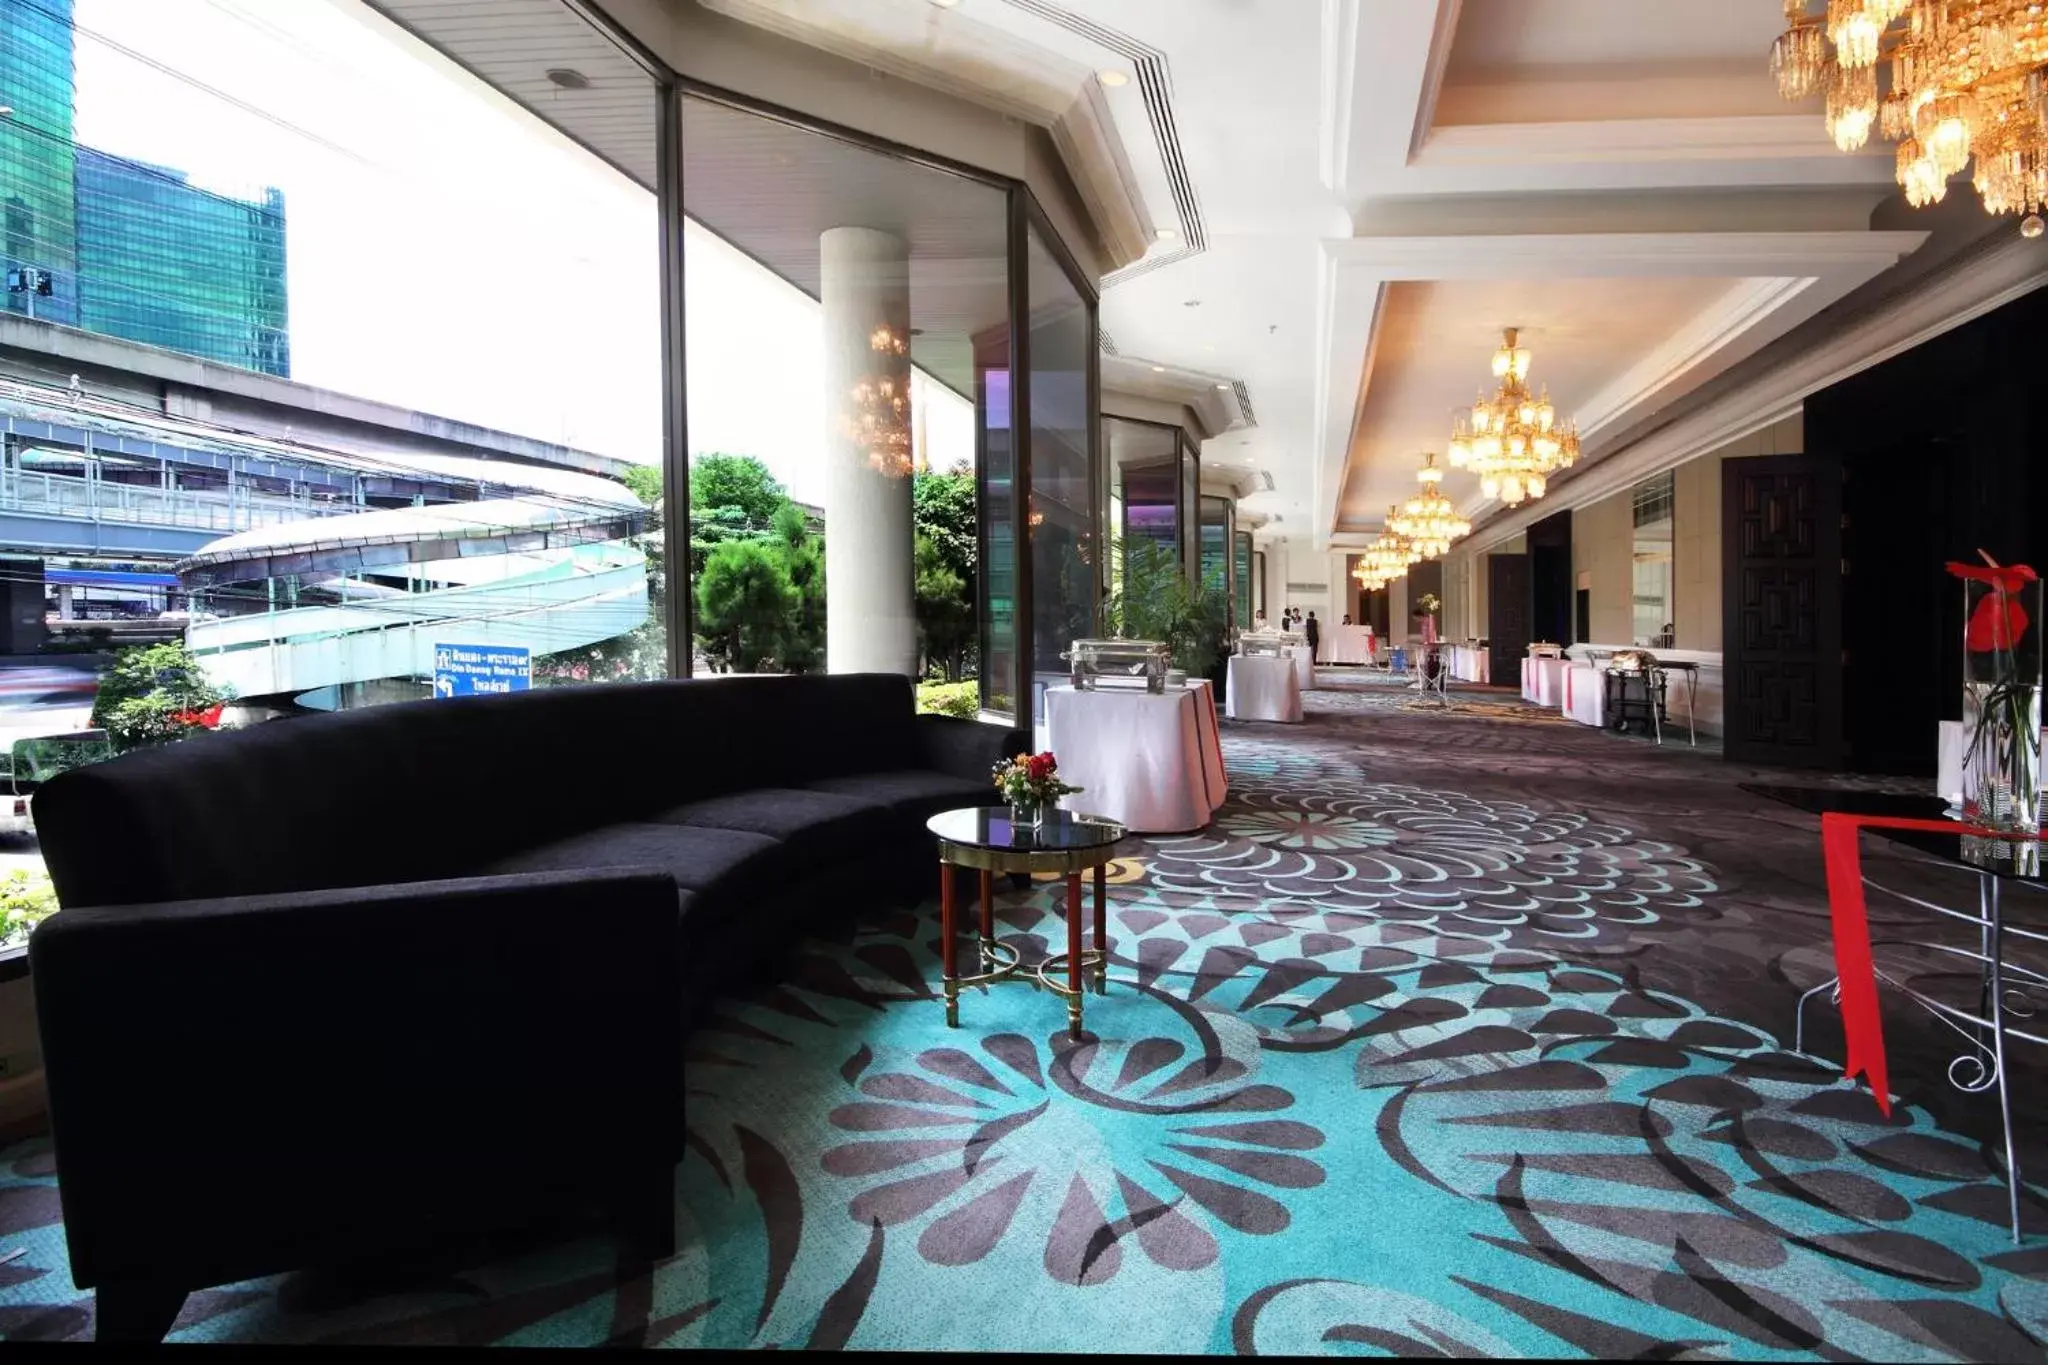 Banquet/Function facilities, Lobby/Reception in Centara Grand at Central Plaza Ladprao Bangkok